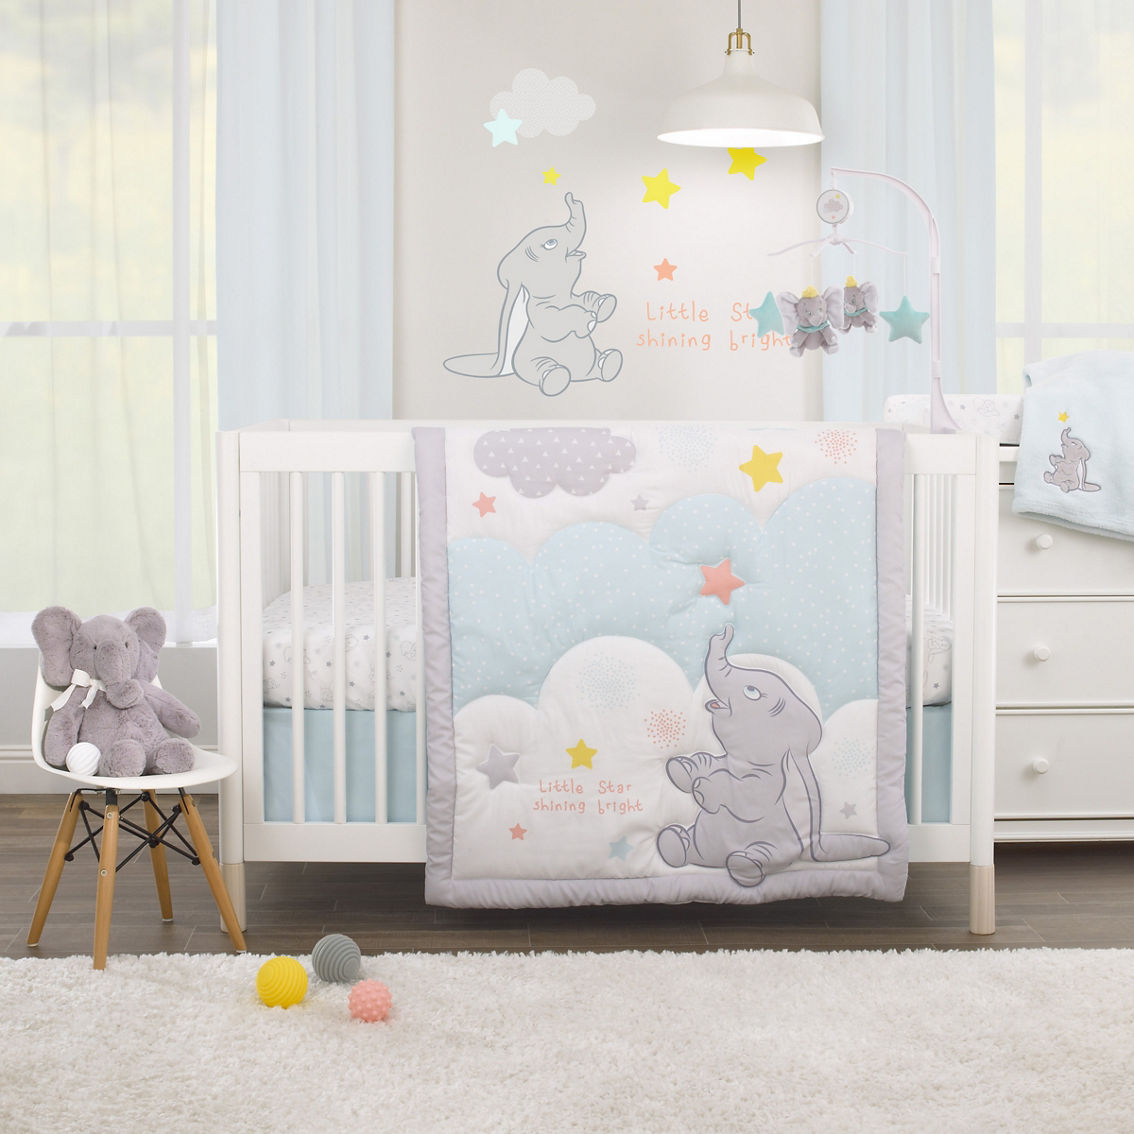 Disney Dumbo Shine Bright Little Star Baby Blanket - Image 5 of 5